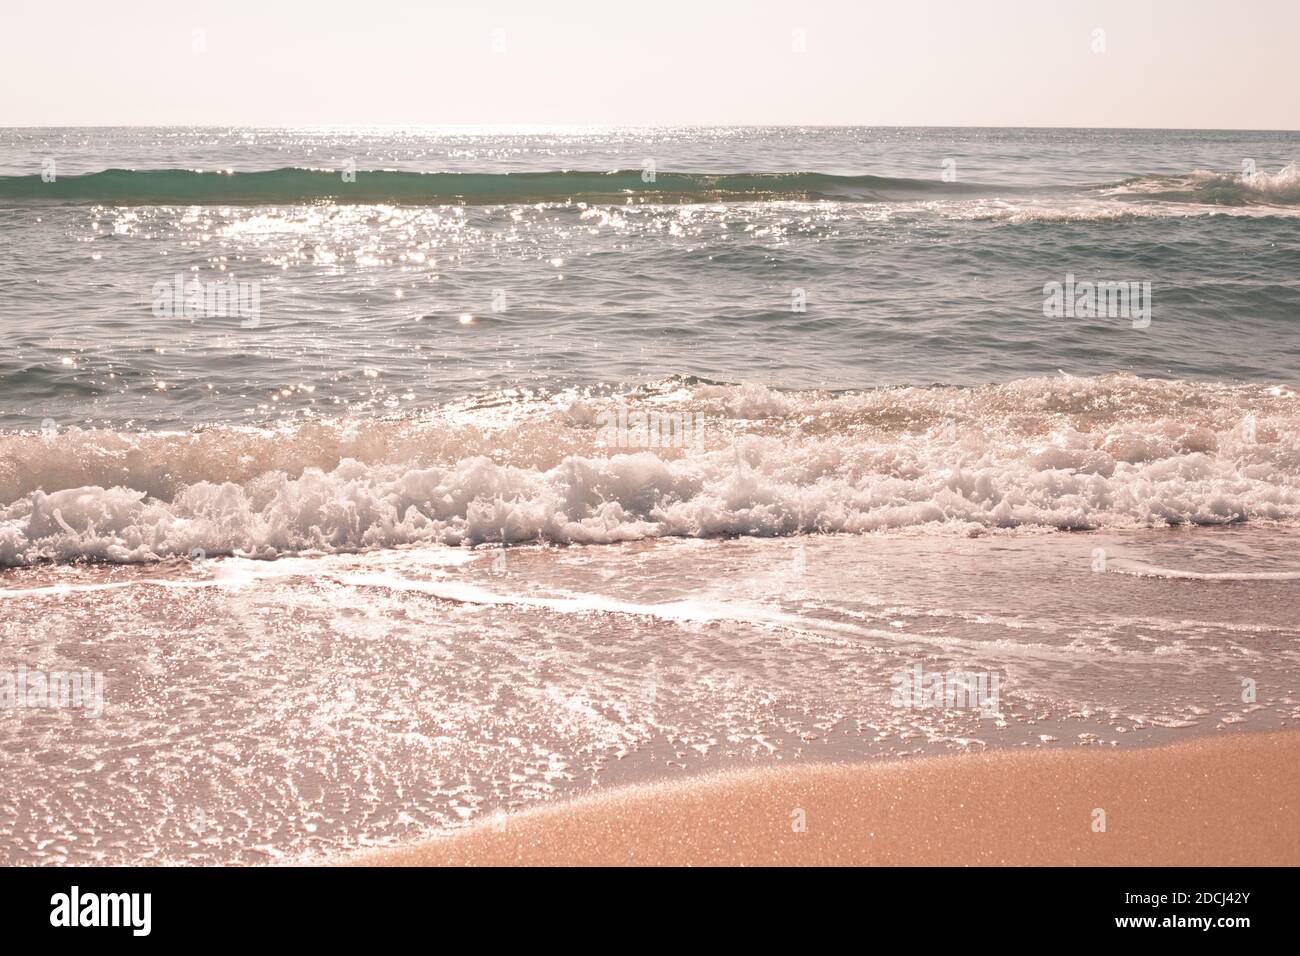 Meer mit hellen Wellen, die Sonne funkelt im Wasser. Reisen und Tourismus, Erholung und Entspannung. Stockfoto